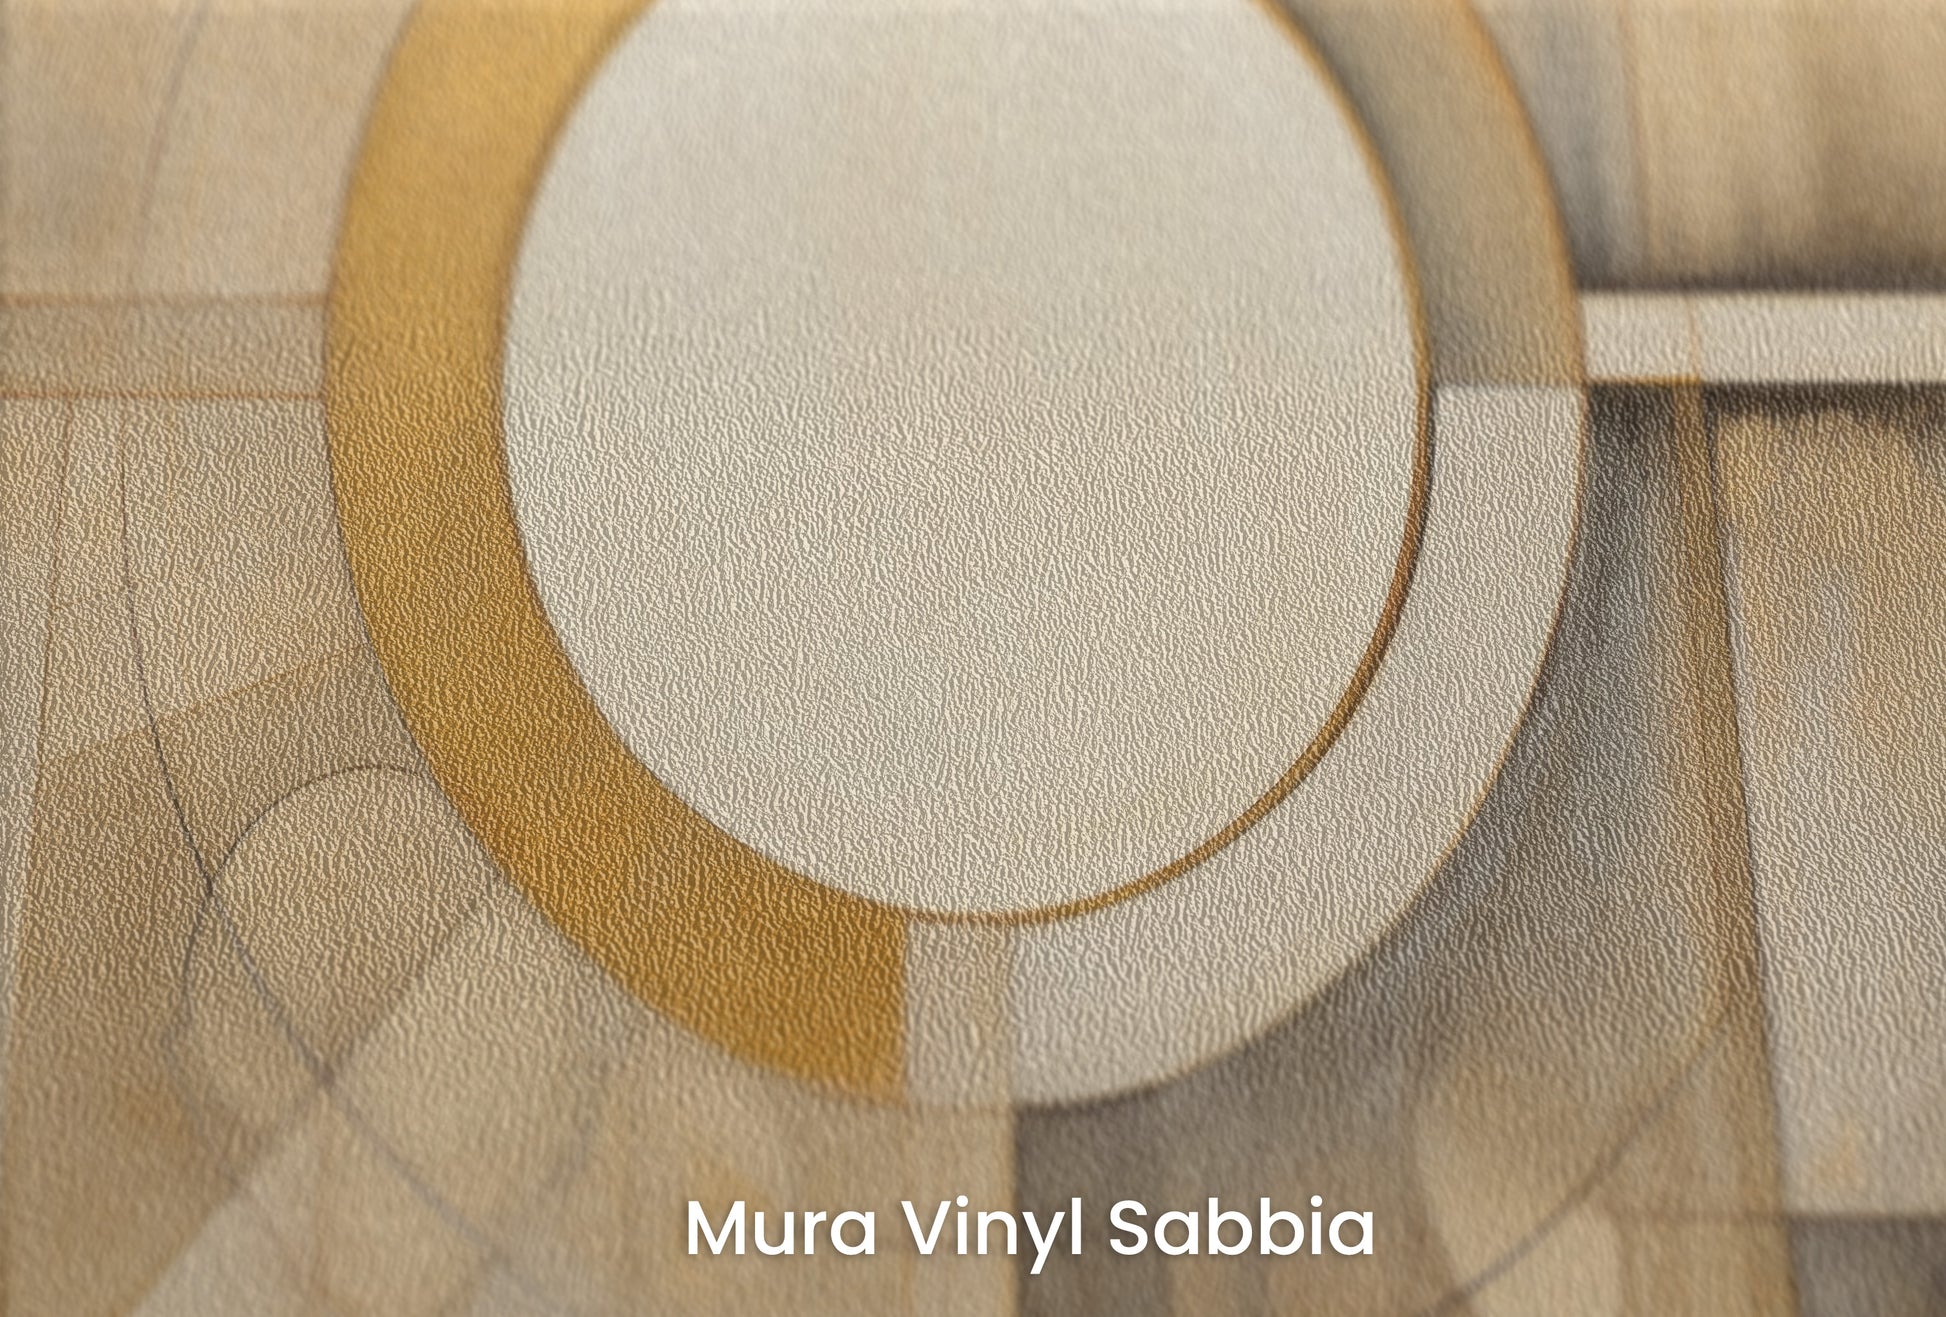 Zbliżenie na artystyczną fototapetę o nazwie CIRCULAR SYMMETRY IN GOLD AND CREAM na podłożu Mura Vinyl Sabbia struktura grubego ziarna piasku.